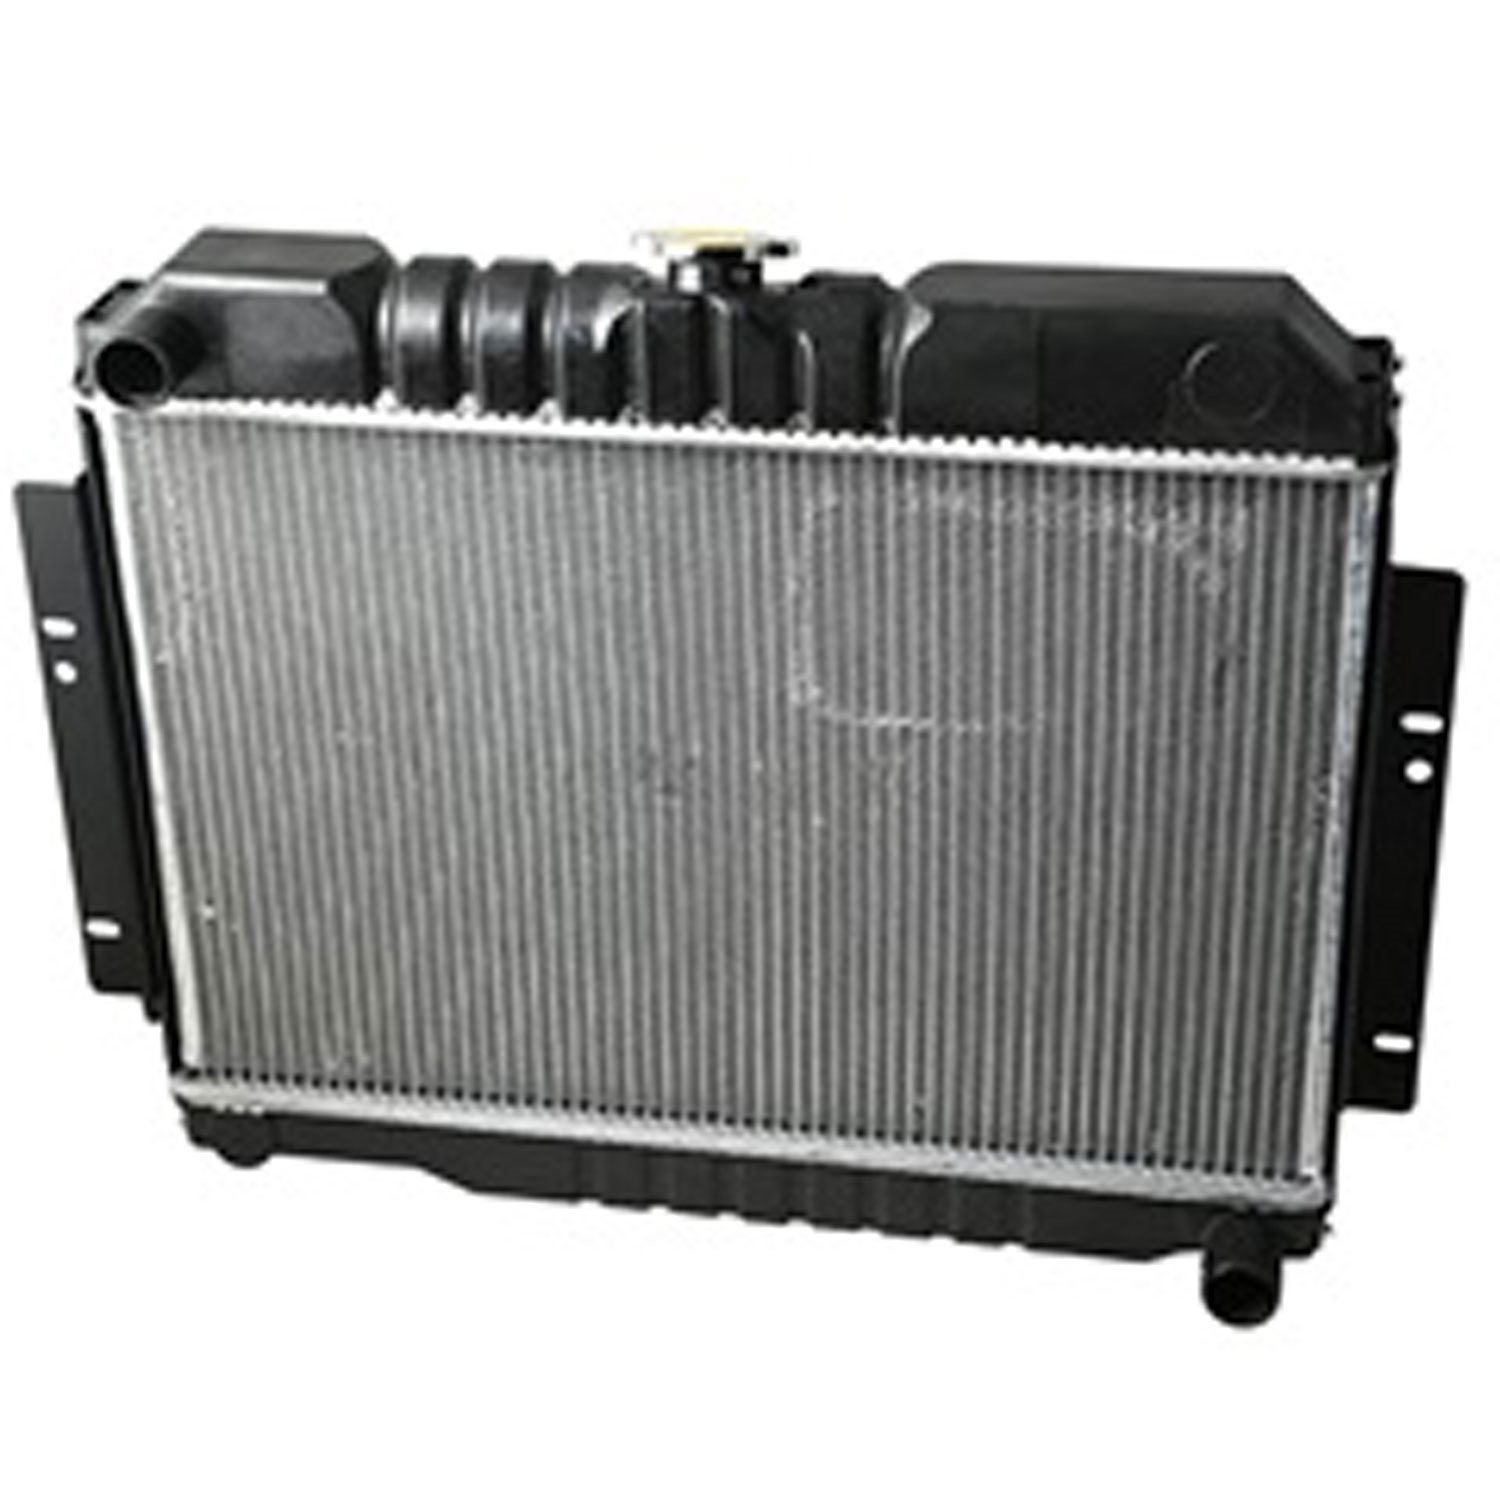 This 2 row radiator with center fill fits 72-83 CJ-5 72-75 CJ-6 76-86 CJ-7 81-86 CJ-8 5.0/5.7L GM en